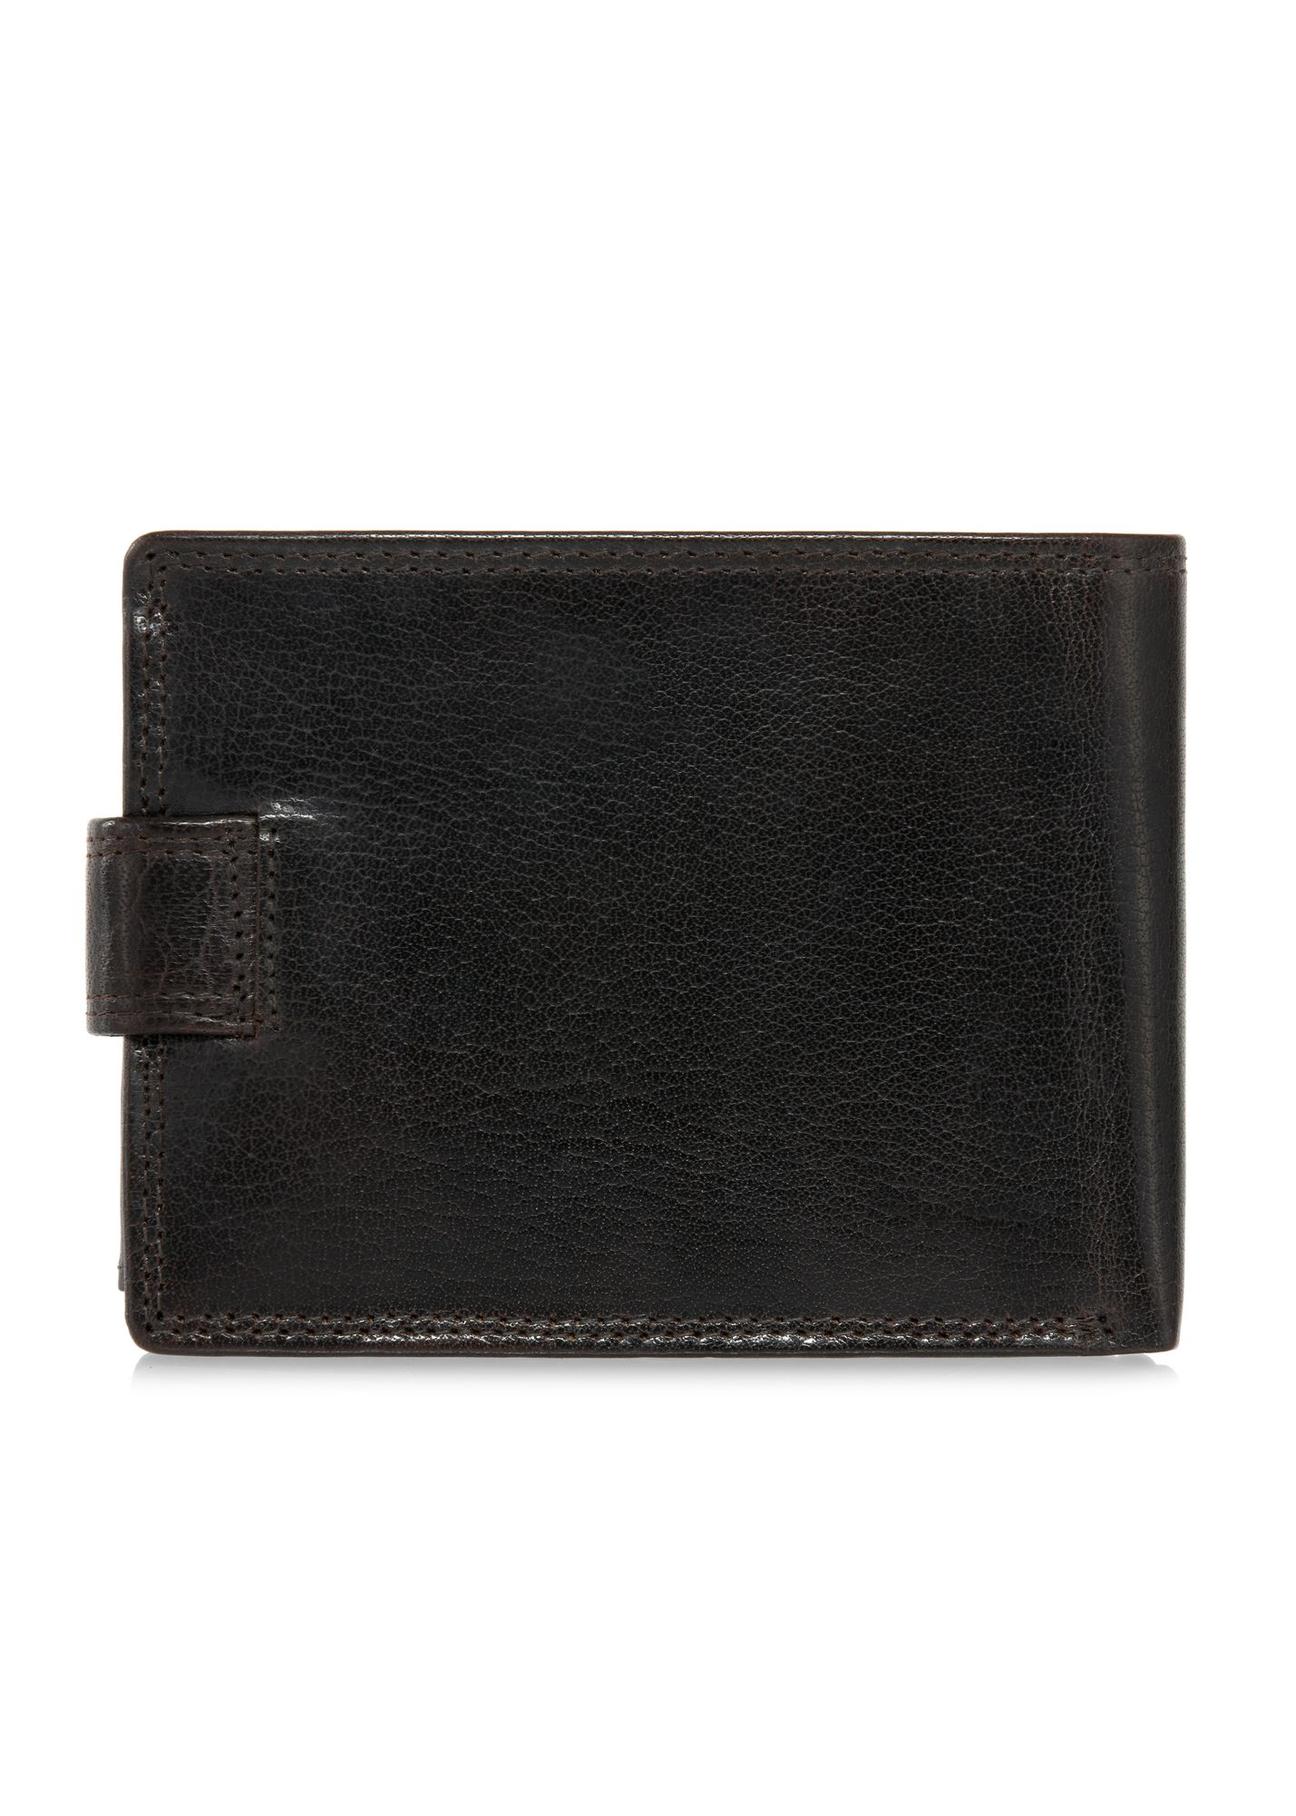 Skórzany zapinany brązowy portfel męski PORMS-0553-89(W24)